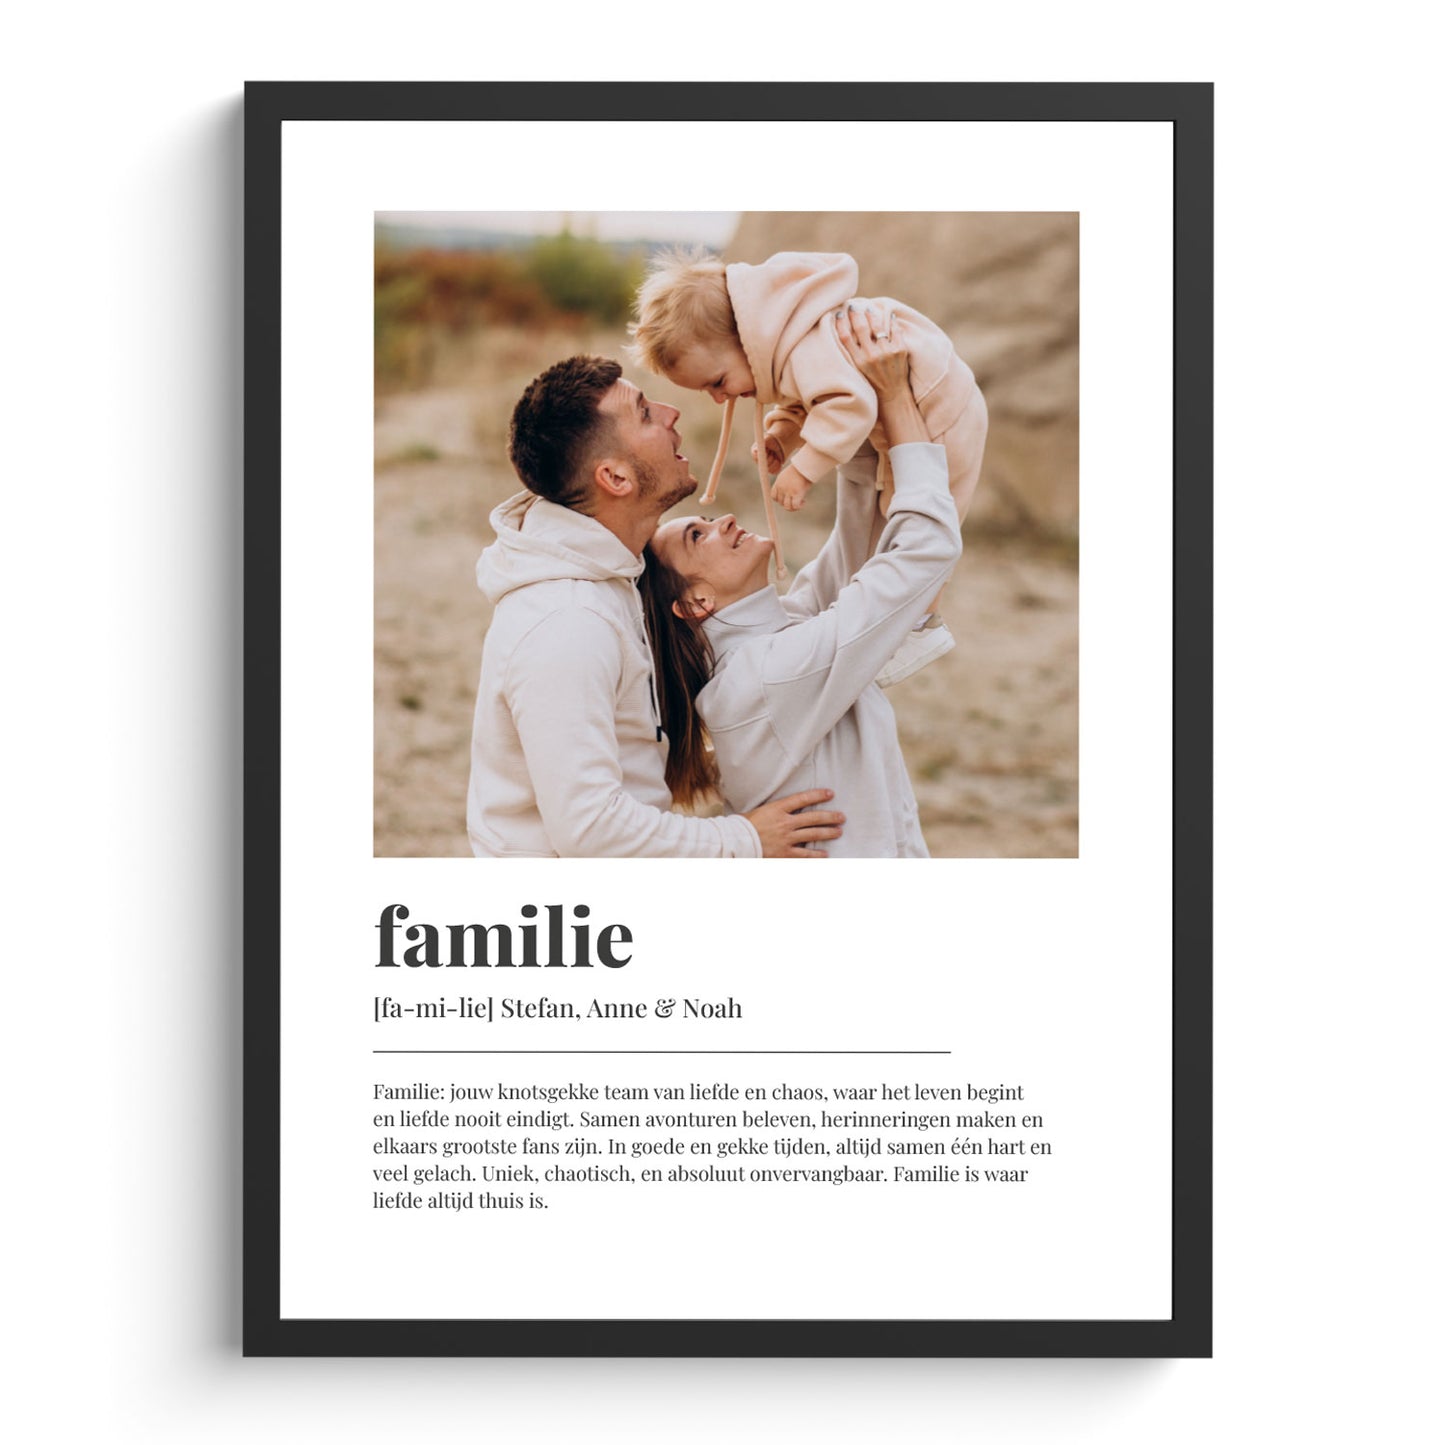 Affiche familiale personnalisée avec photo | Signification familiale